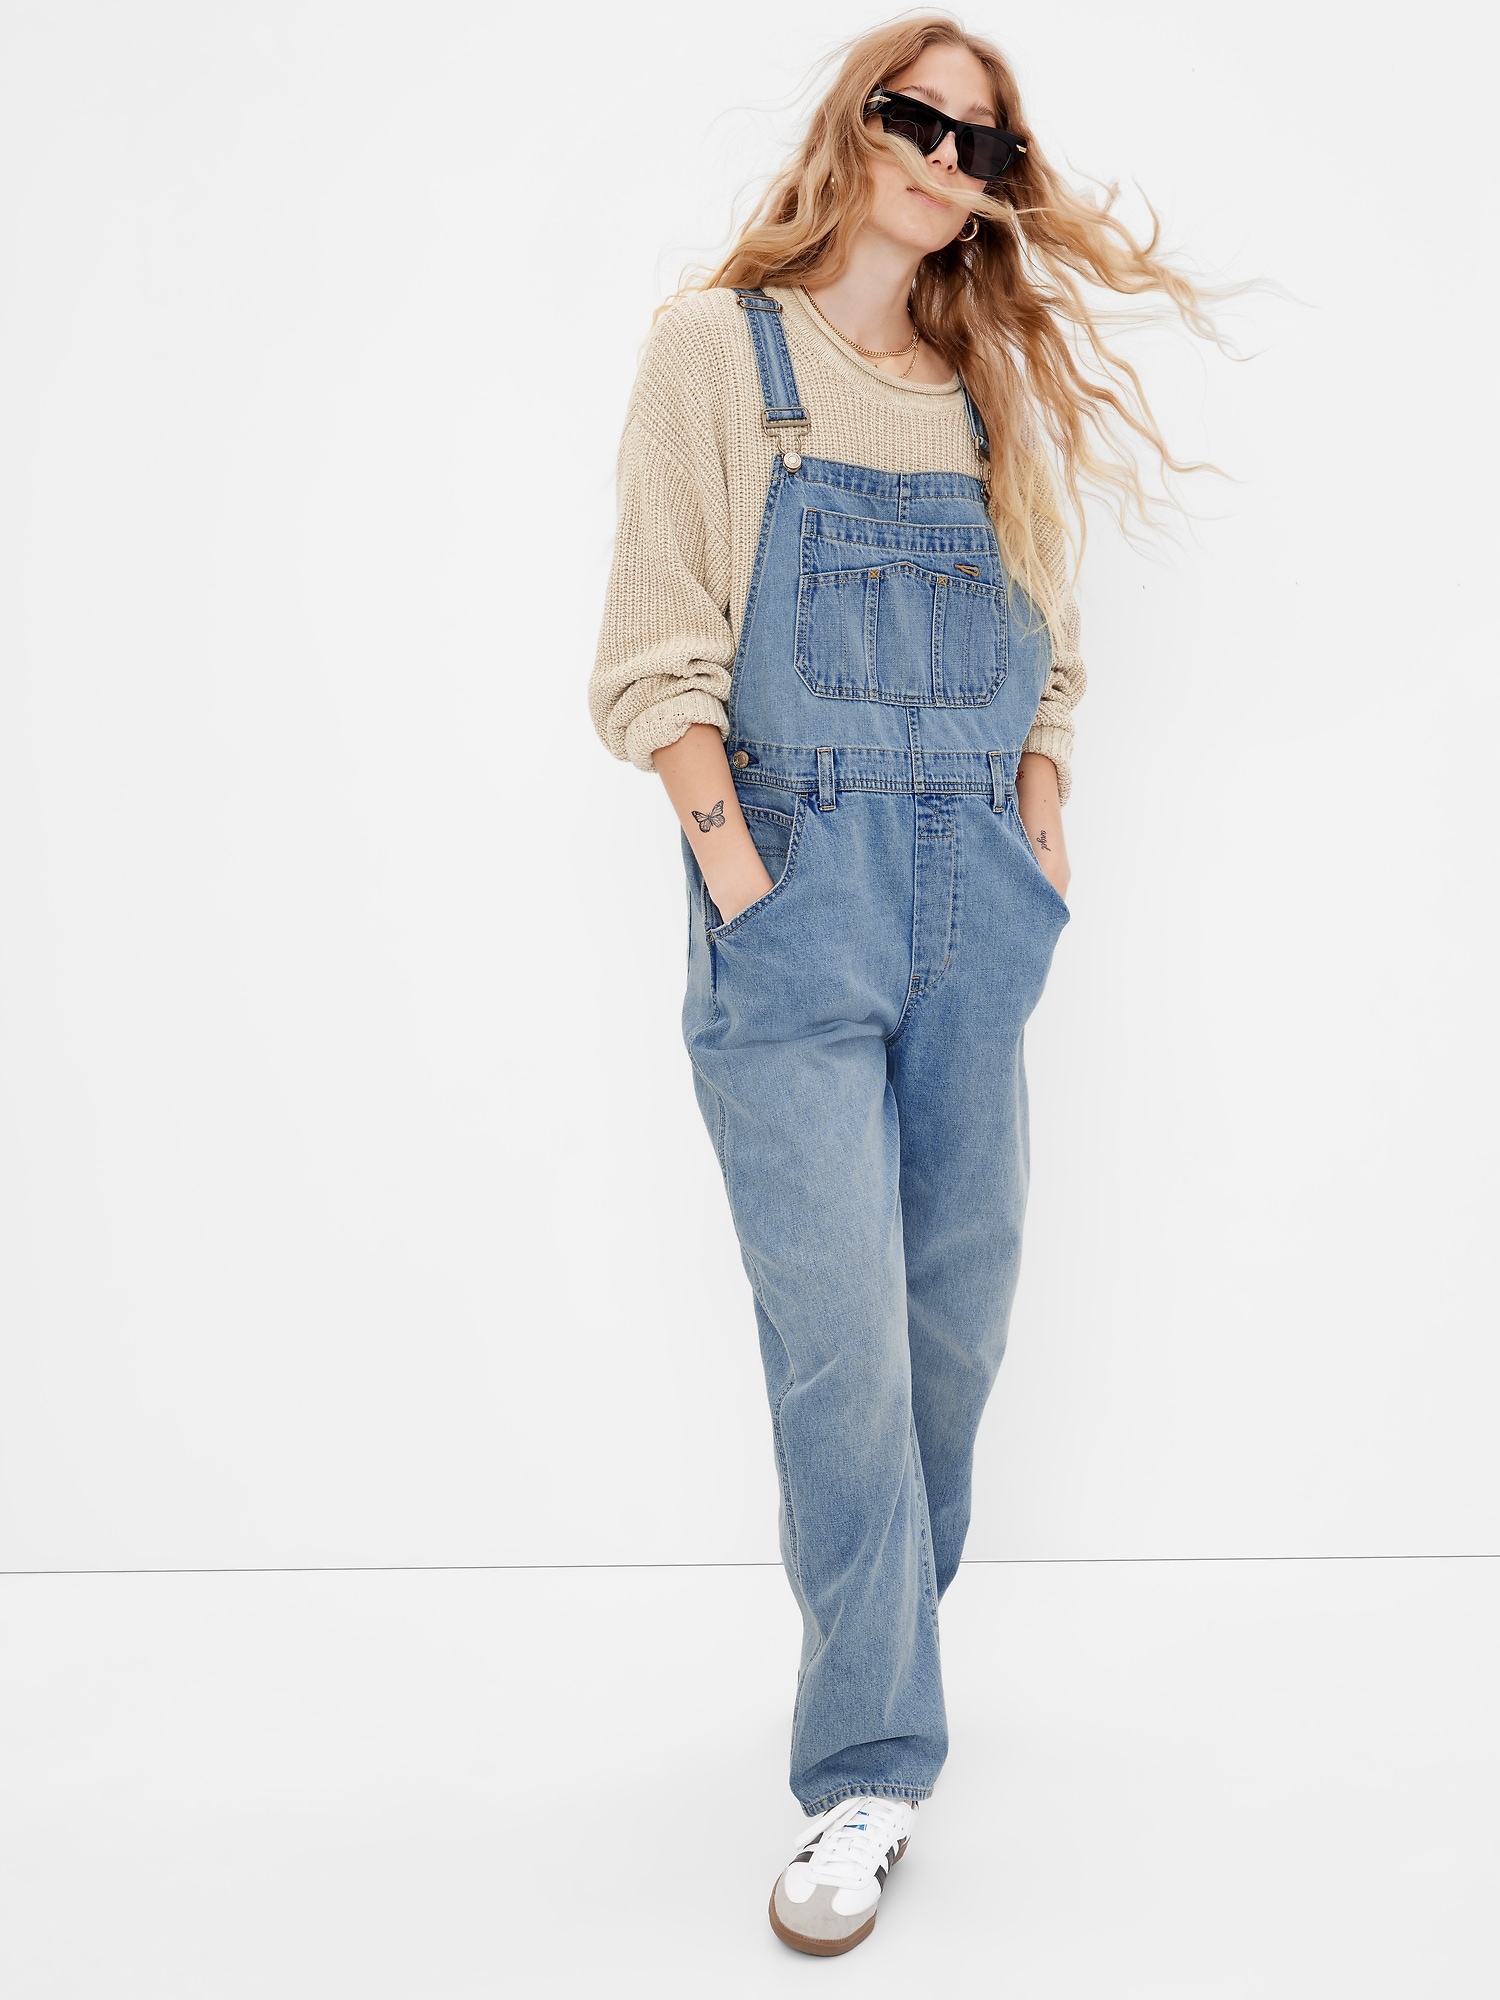 Vintage 90s Gap Classic Fit Blue Jeans Denim High Rise Womens 16